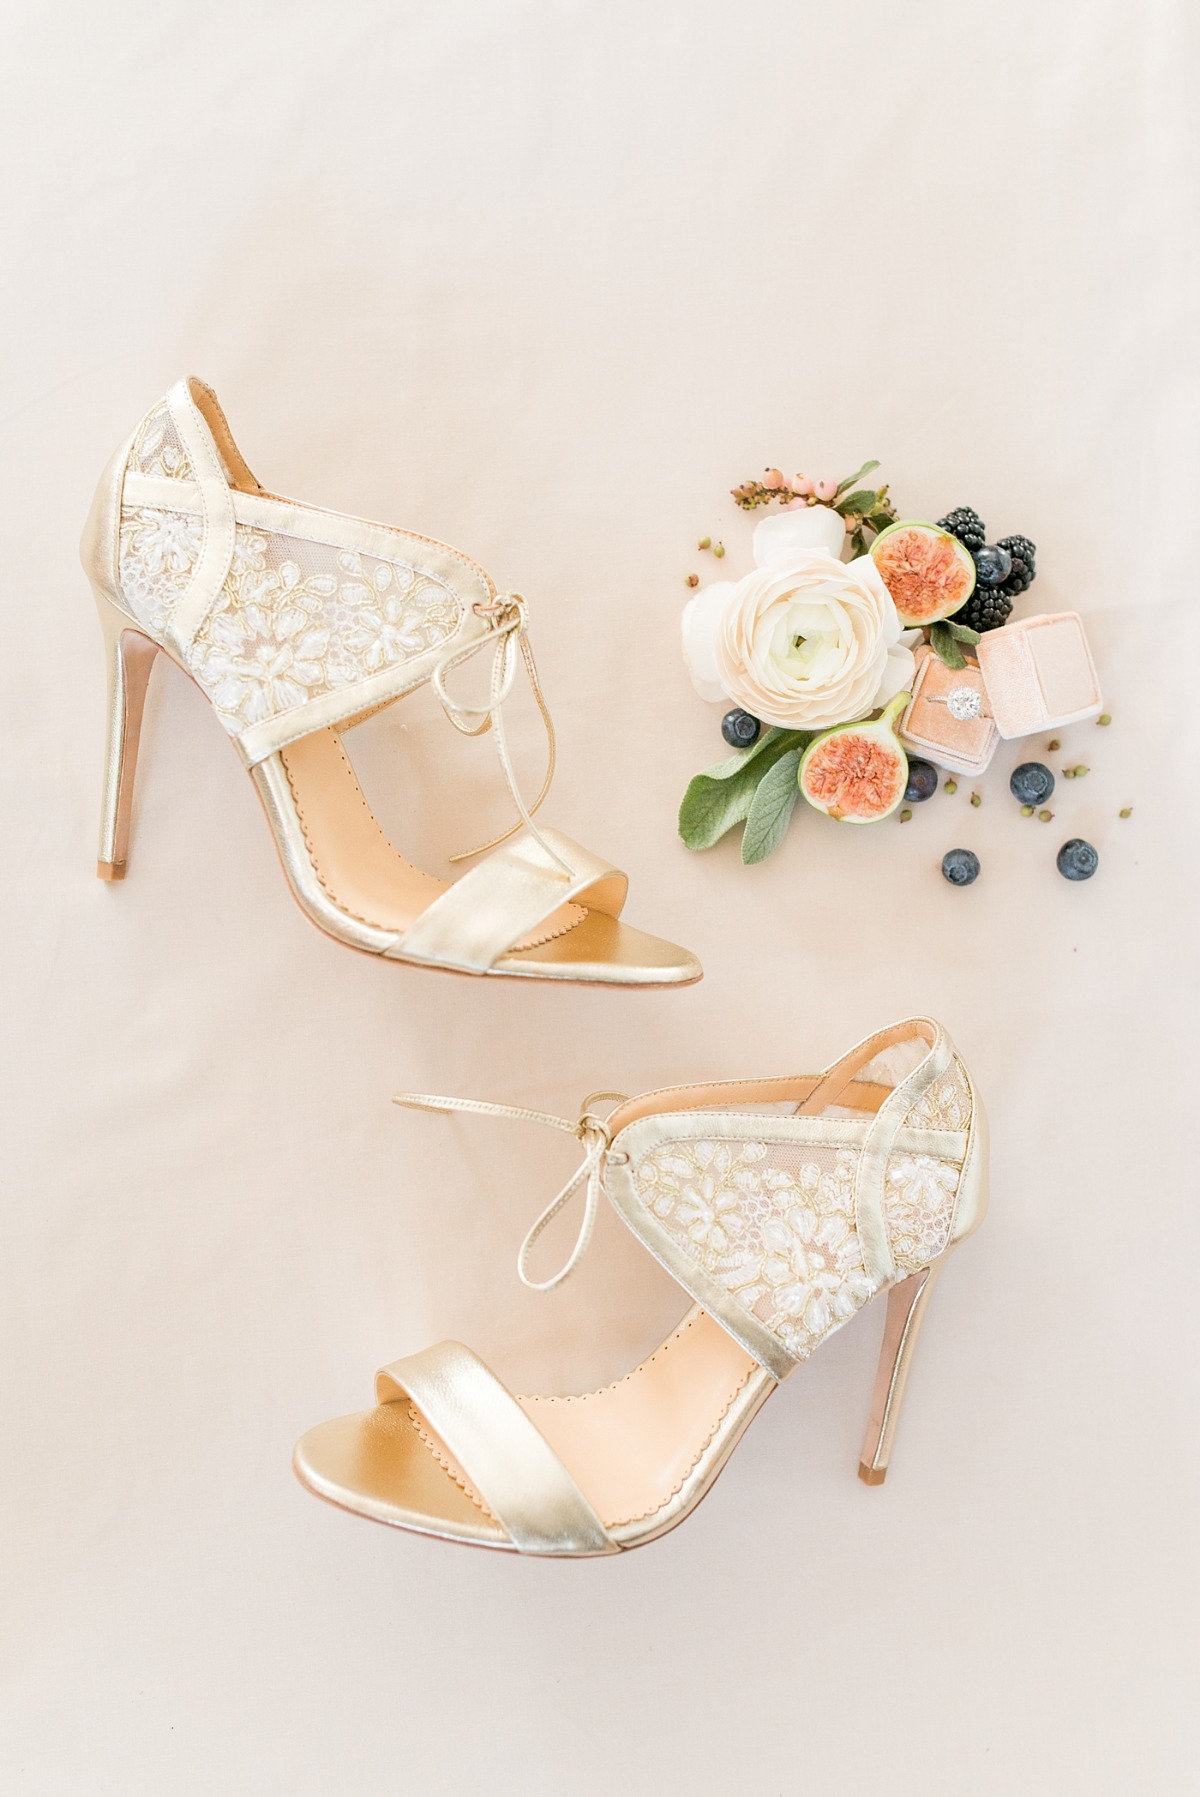 Wedding heels from Bella Belle